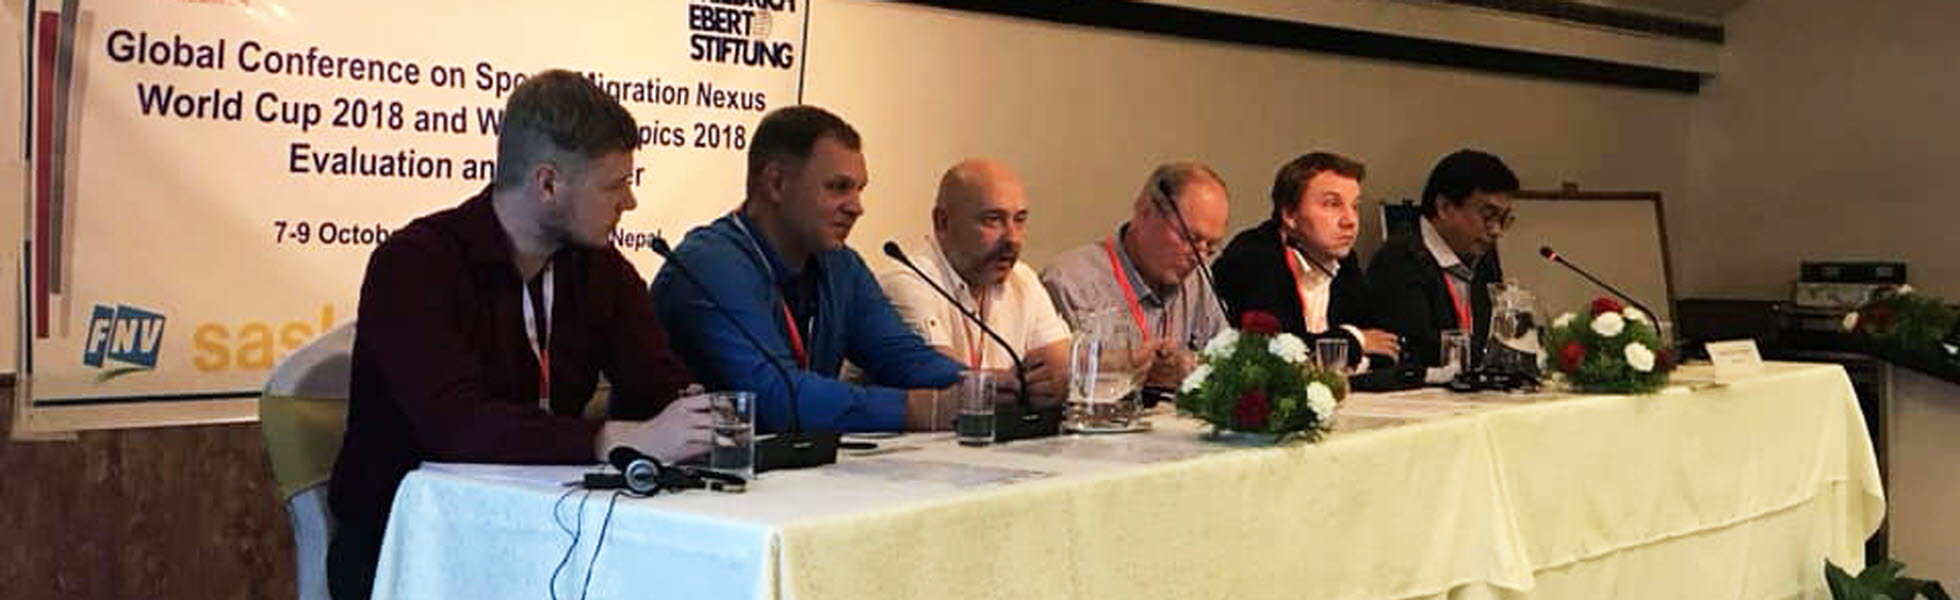 Jonas deltar i paneldebatt gällande BWI kampanjarbete i Ryssland, inför fotbolls VM 2018.